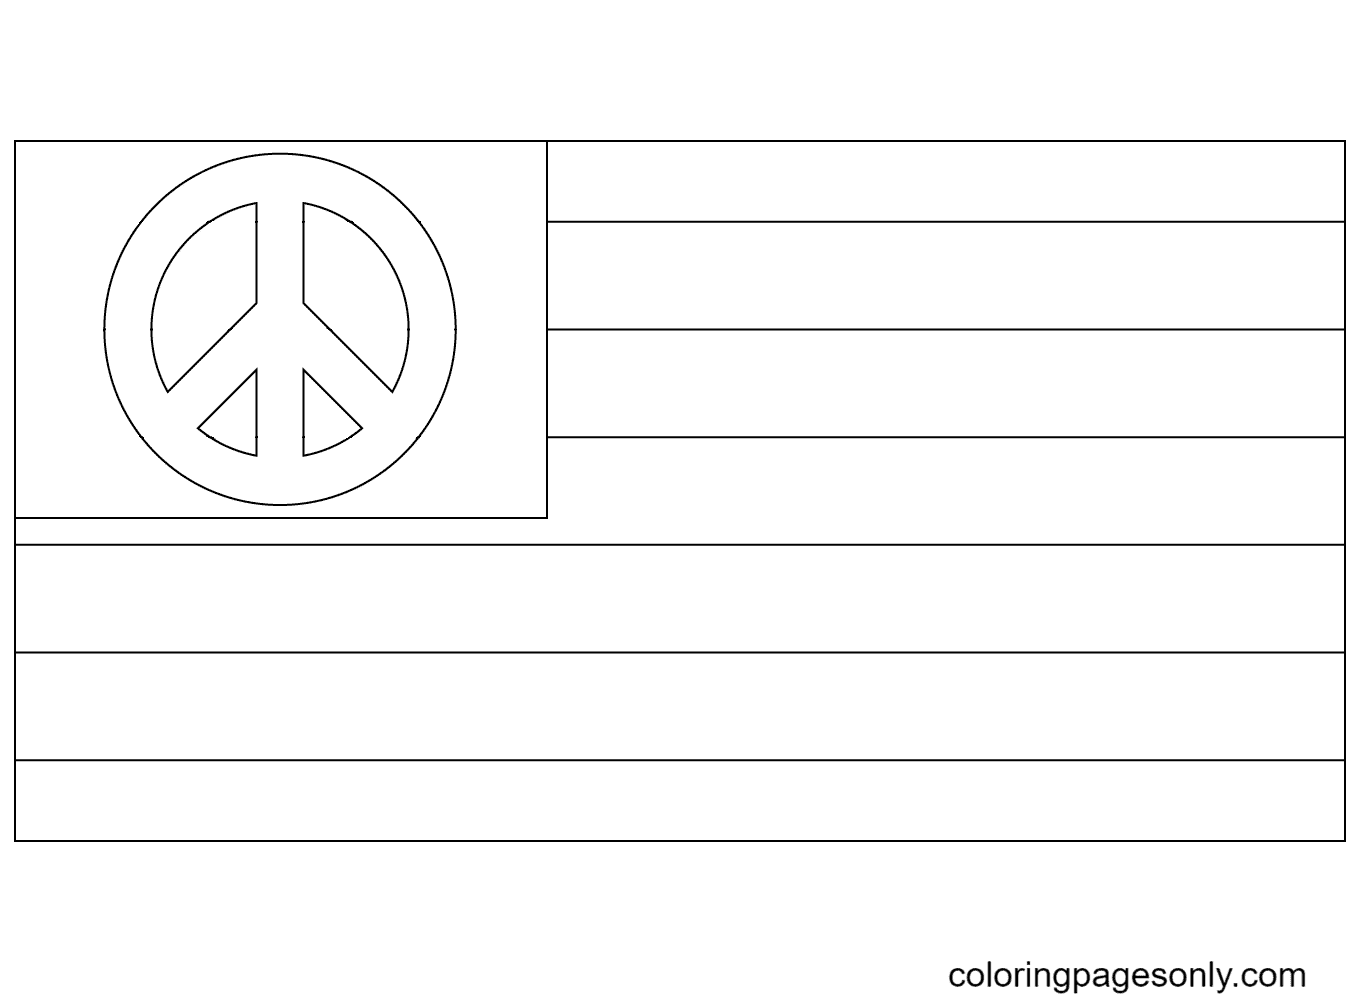 علم السلام الأمريكي من اليوم العالمي للسلام